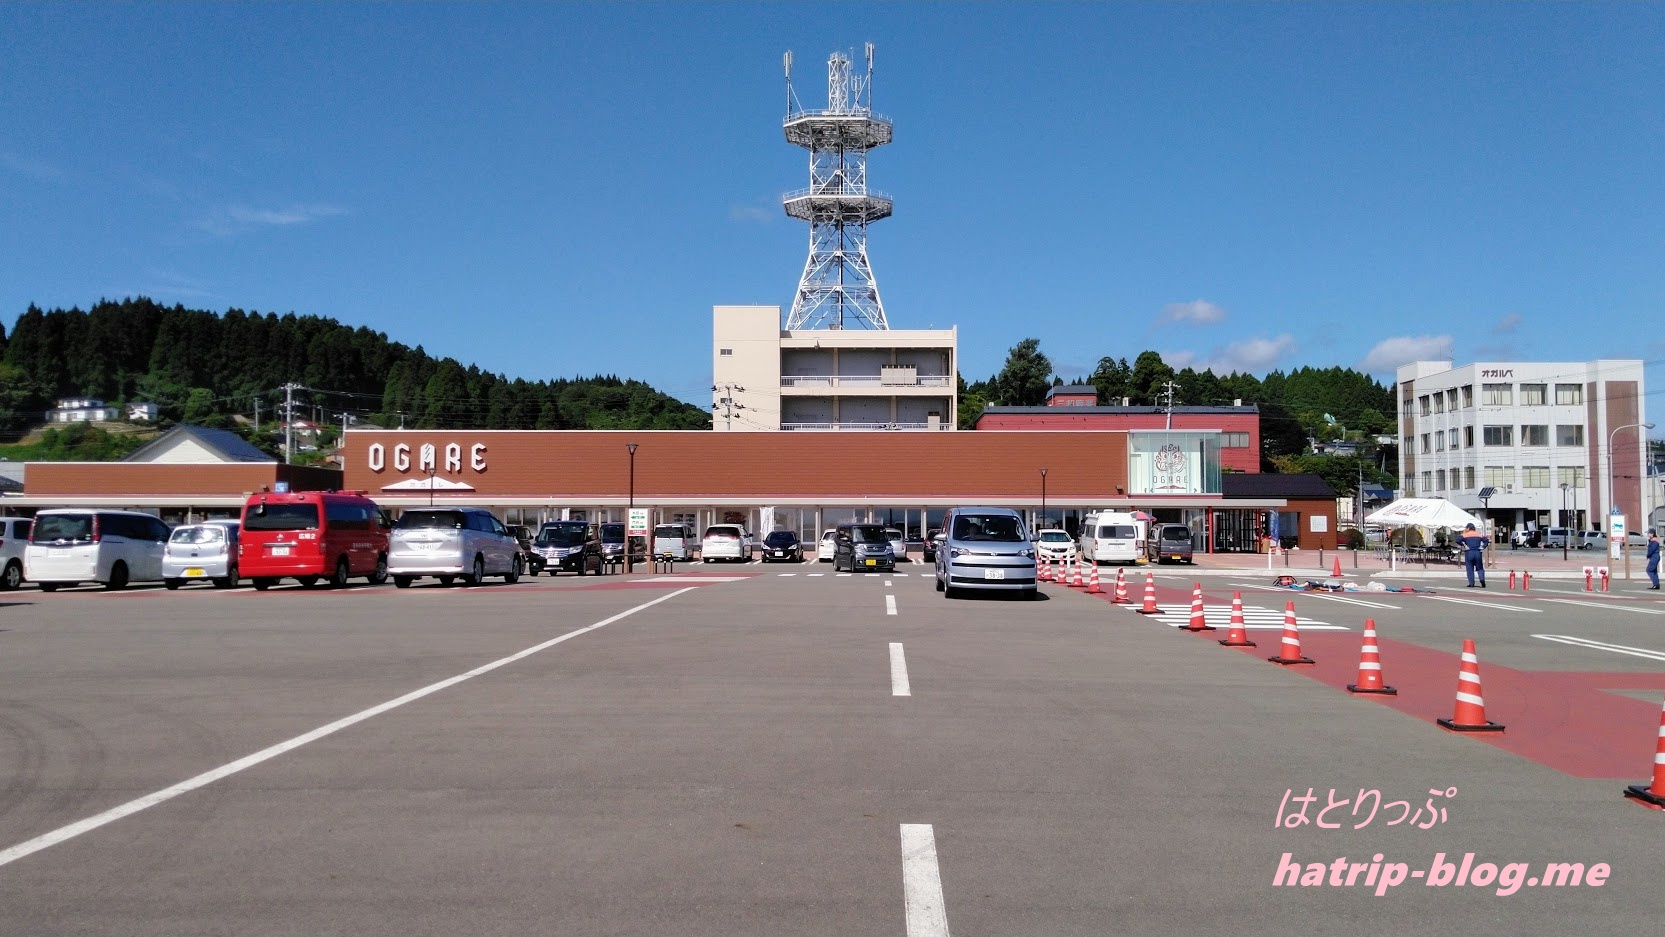 秋田県男鹿市 道の駅おが オガーレ 駐車場